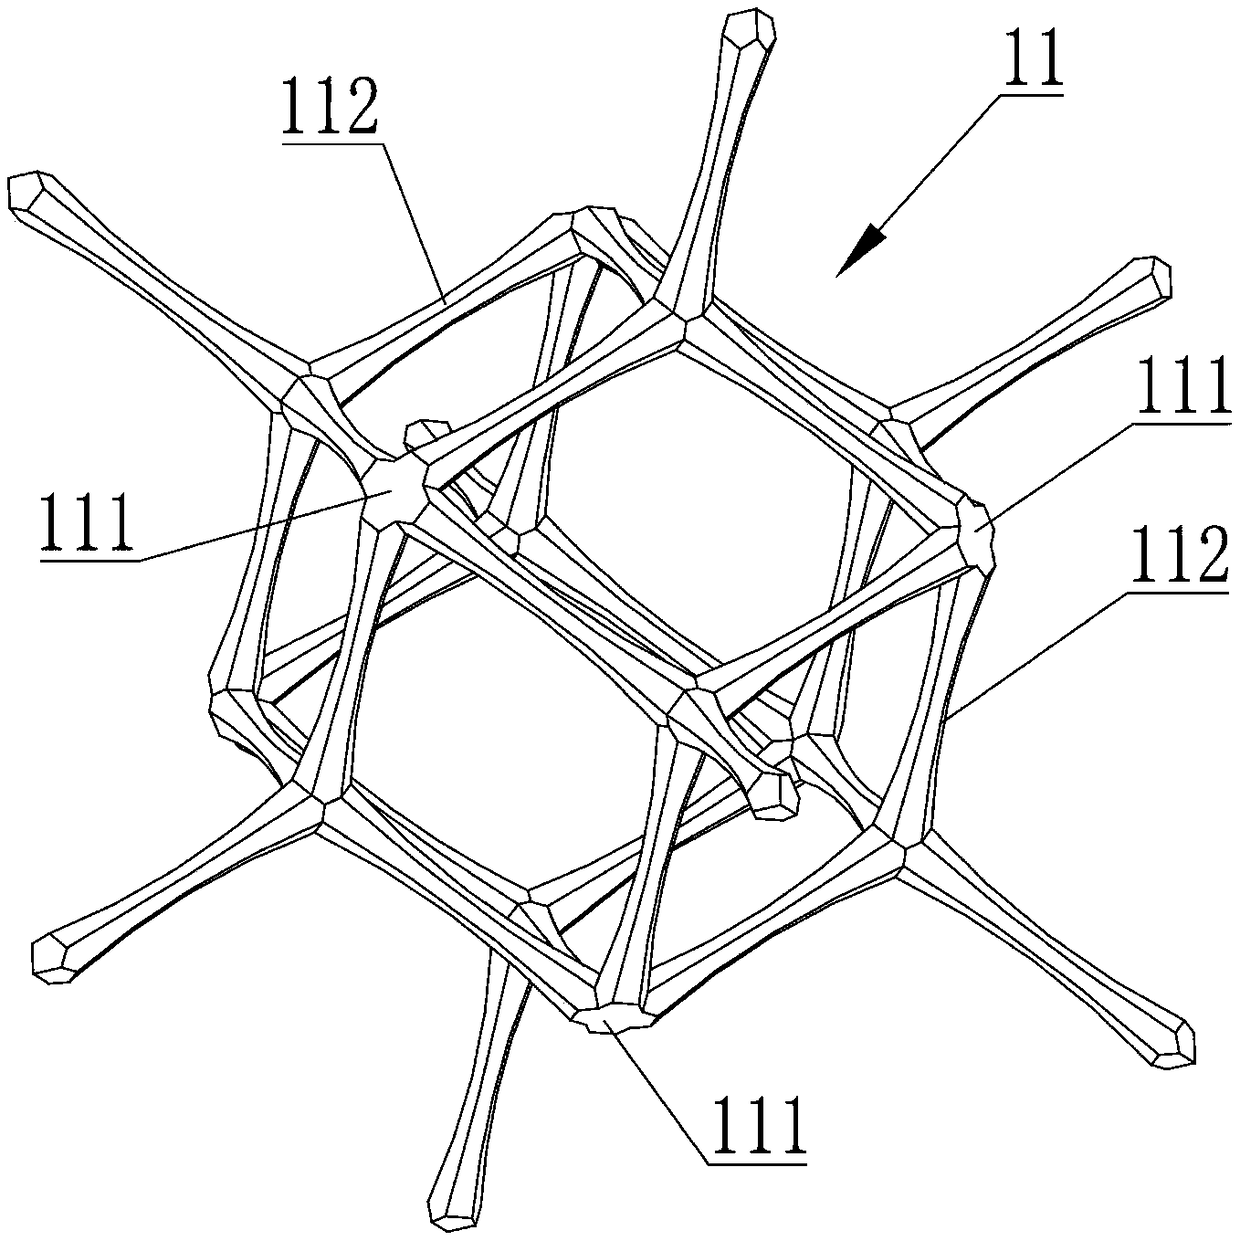 Lattice structure and lattice part